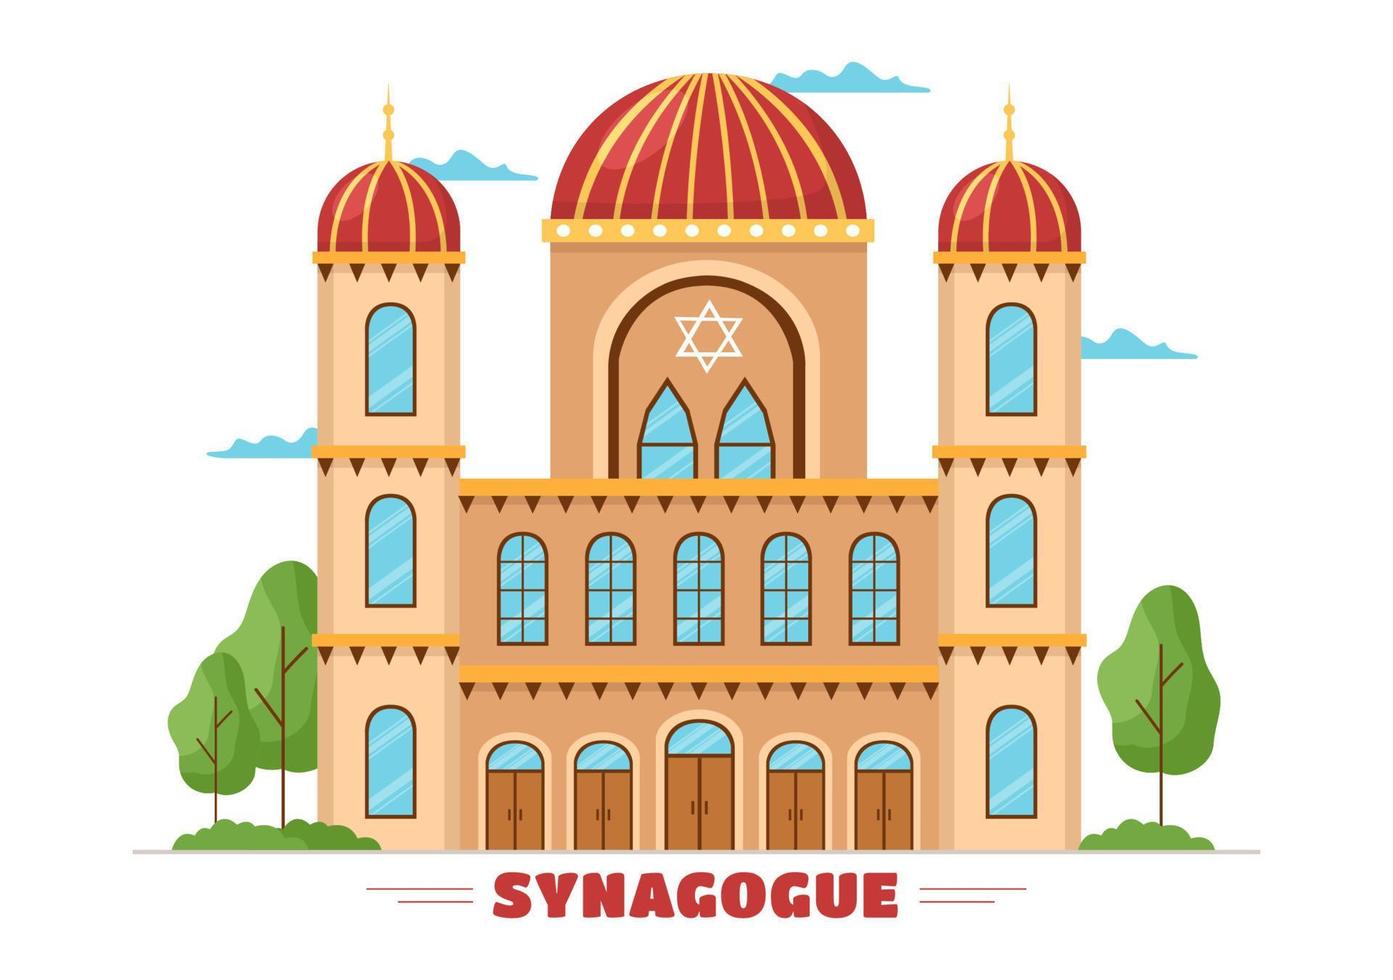 construção de sinagoga ou templo judaico com local de culto religioso, hebraico ou judaísmo e judeu em modelo de ilustração plana de desenho animado desenhado à mão vetor